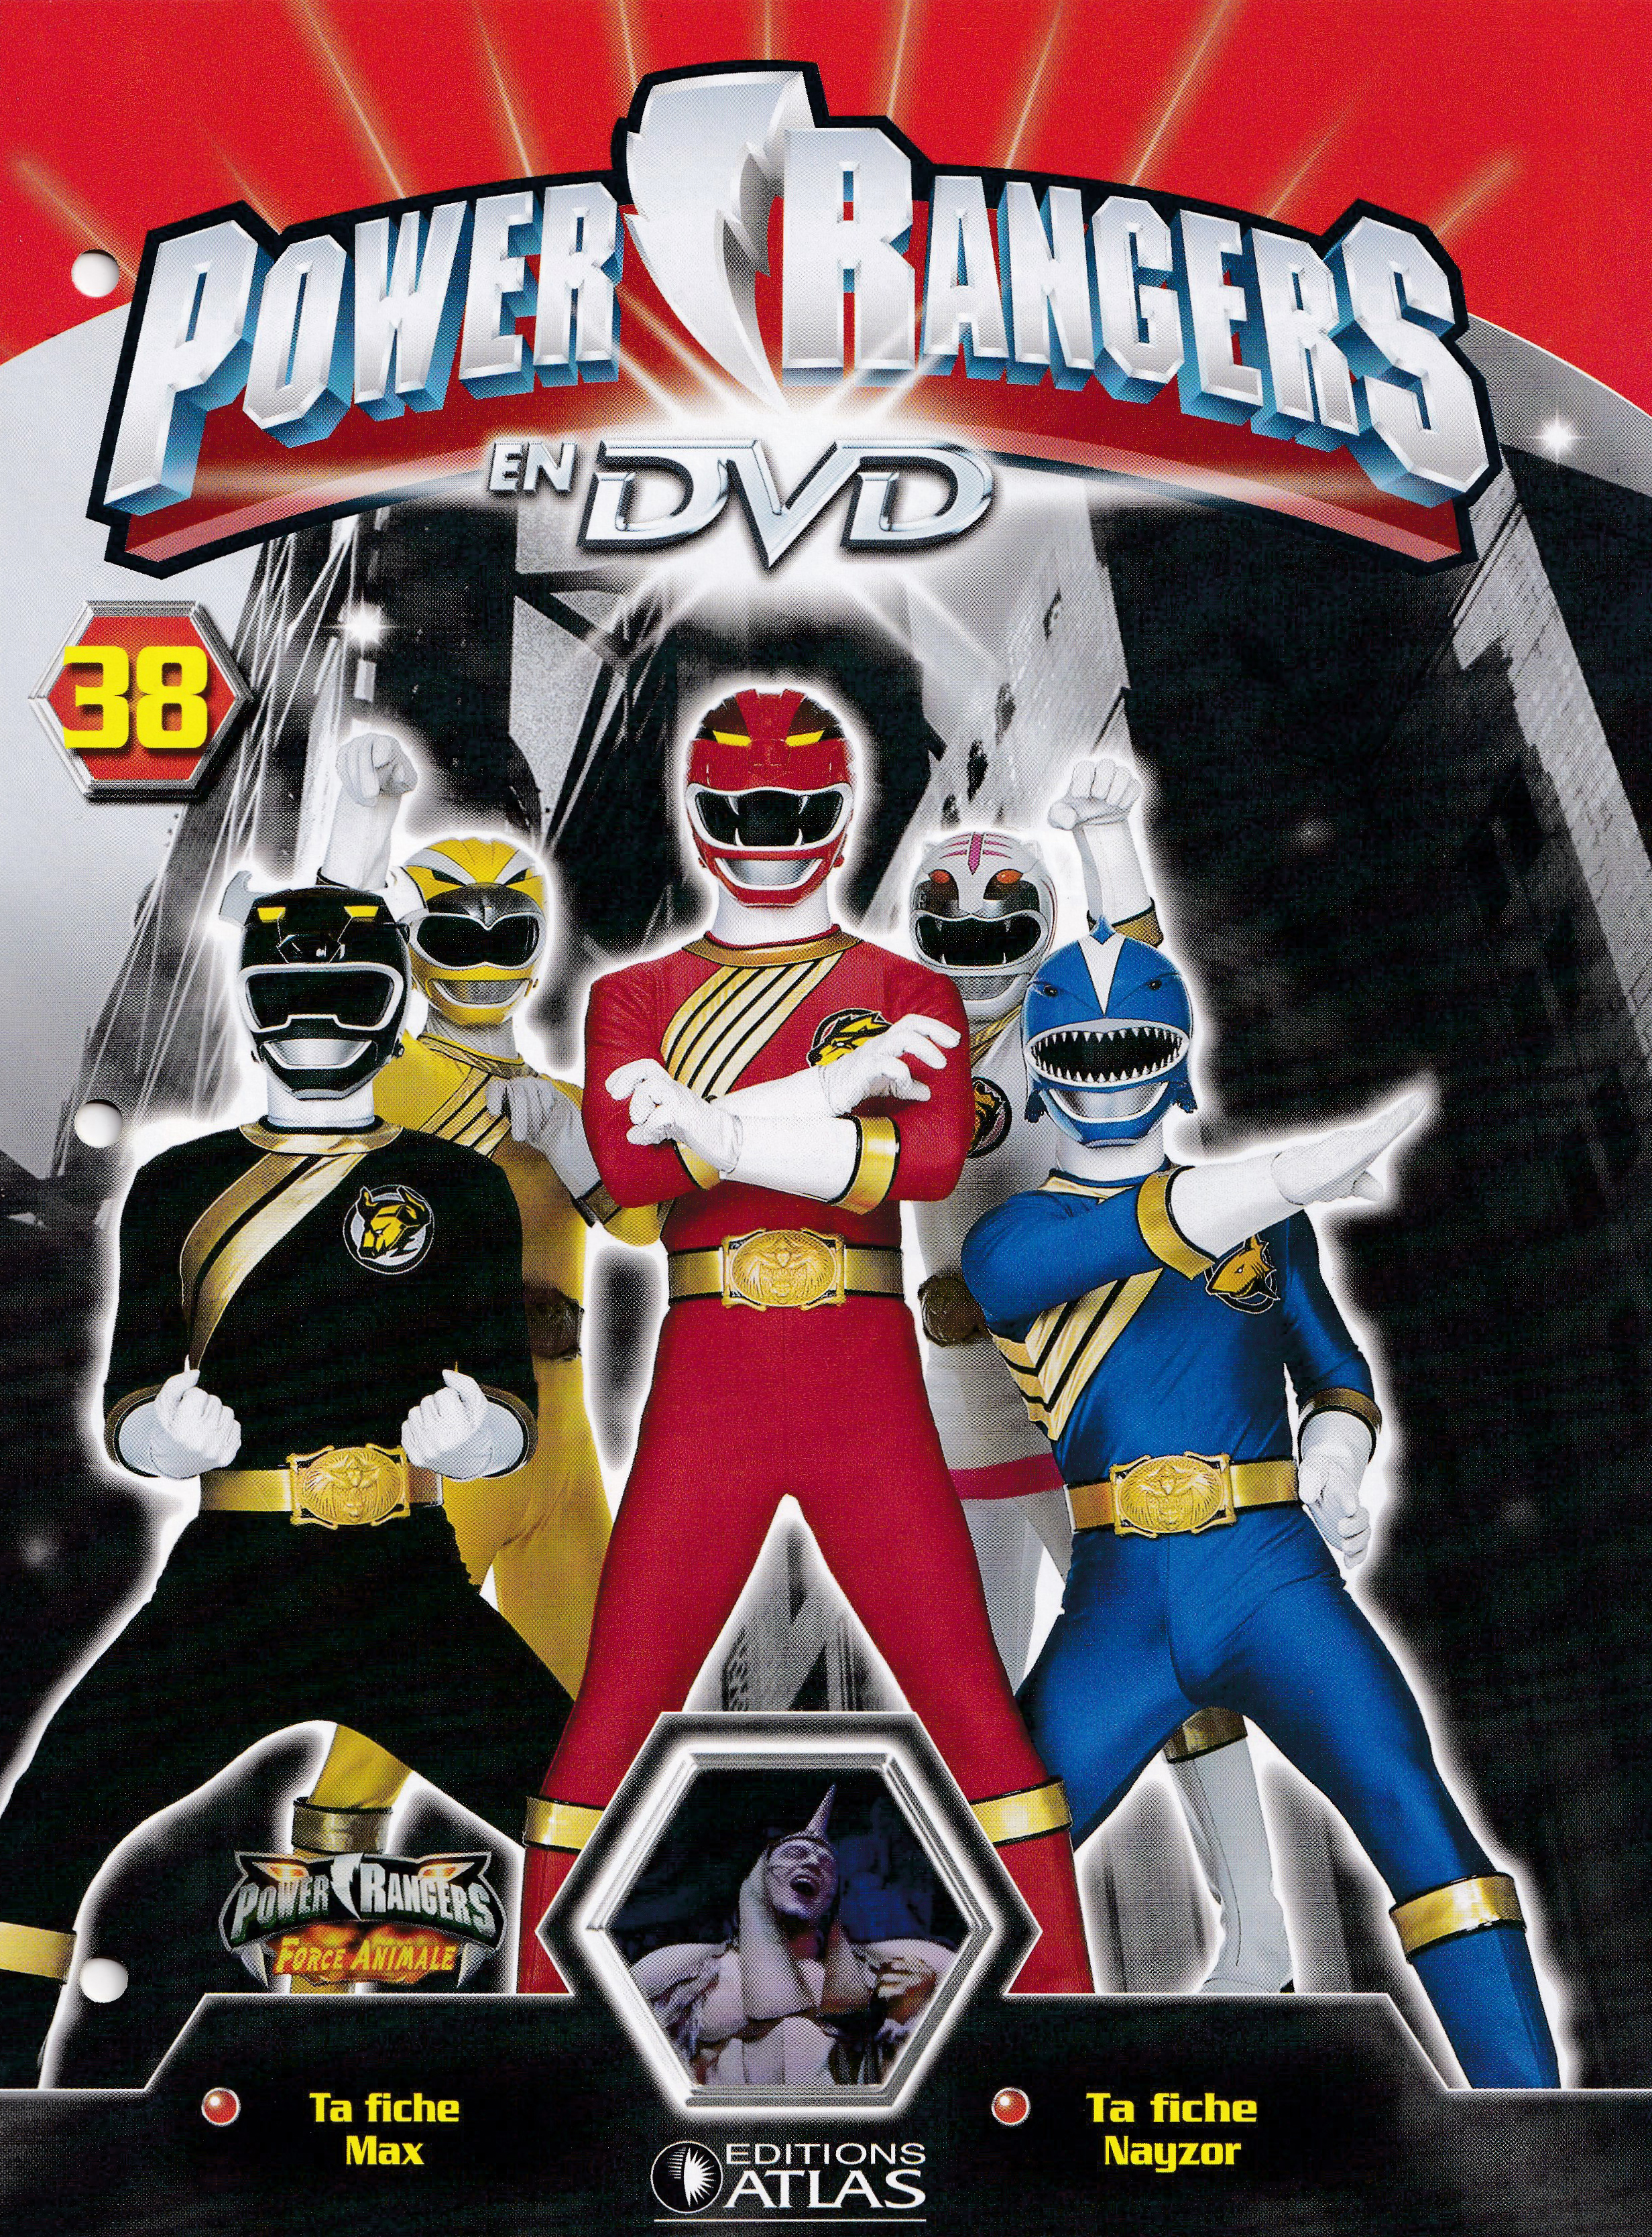 Power Rangers en DVD n°38